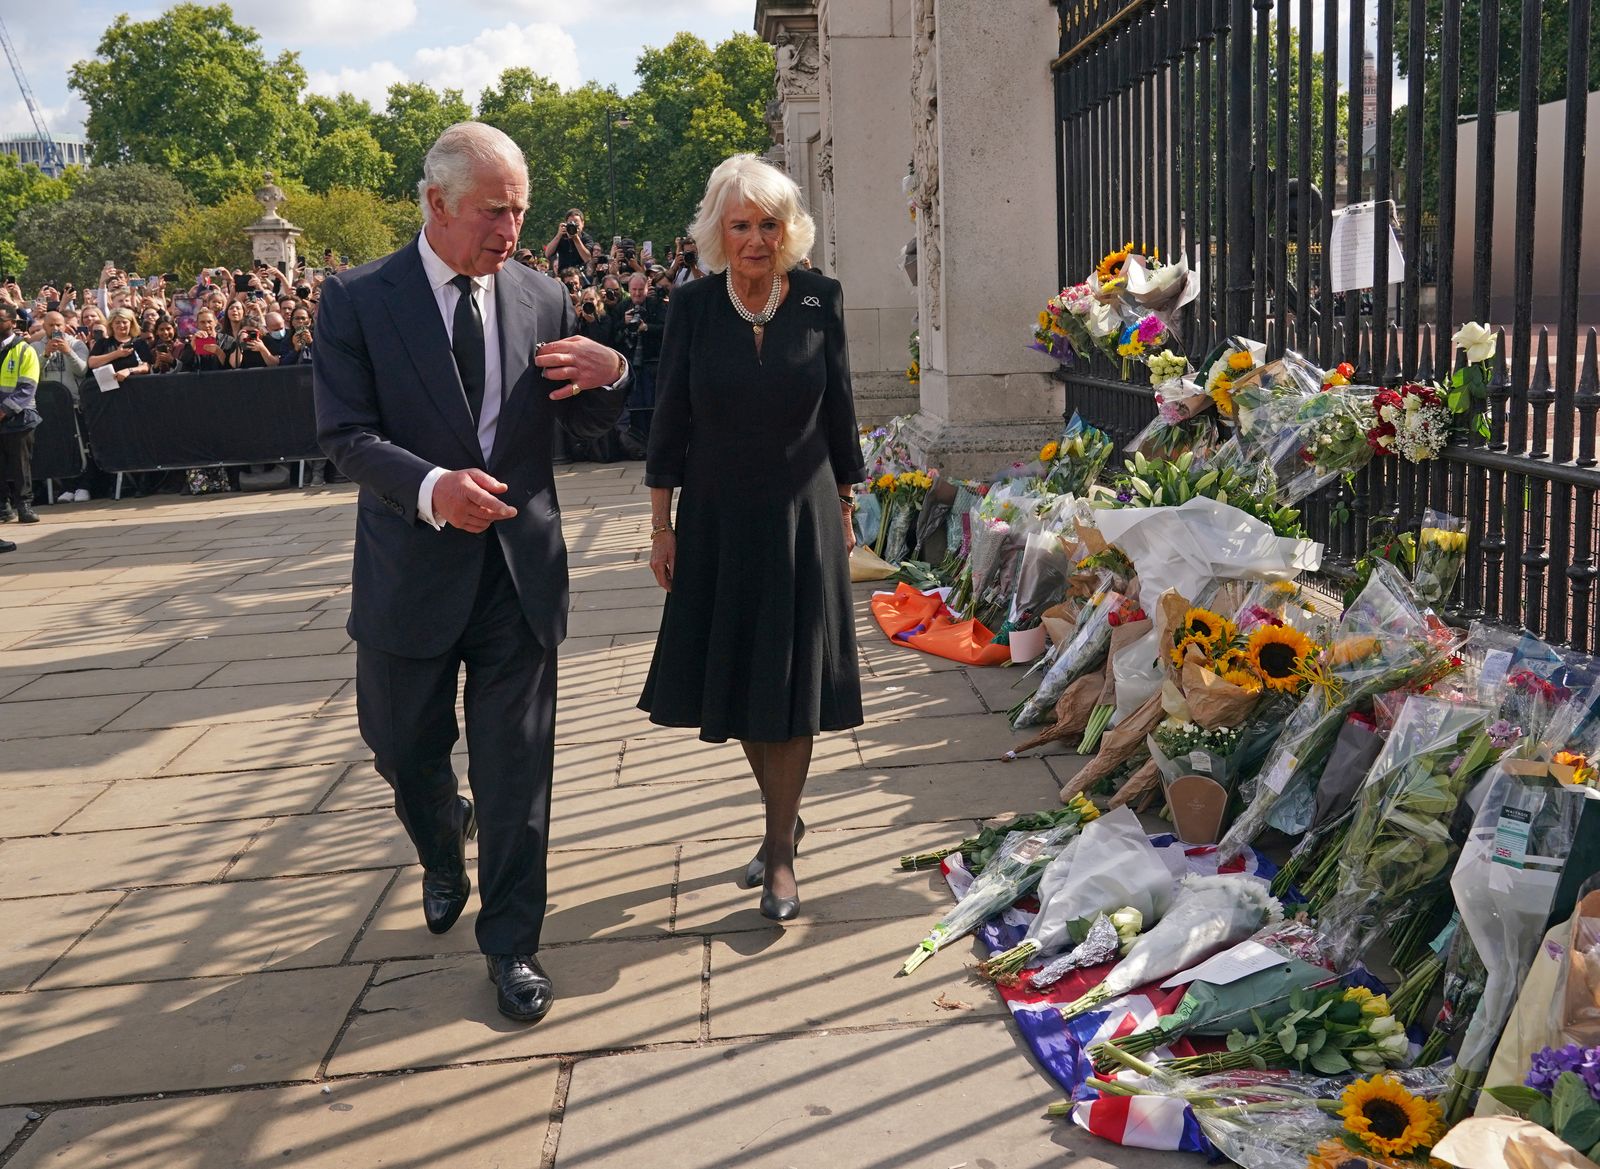 الملك تشارلز وزوجته كاميلا قرب قصر باكنجهام حيث وضعت أكاليل الزهور لوفاة إليزابيث.9 سبتمبر 2022 - REUTERS